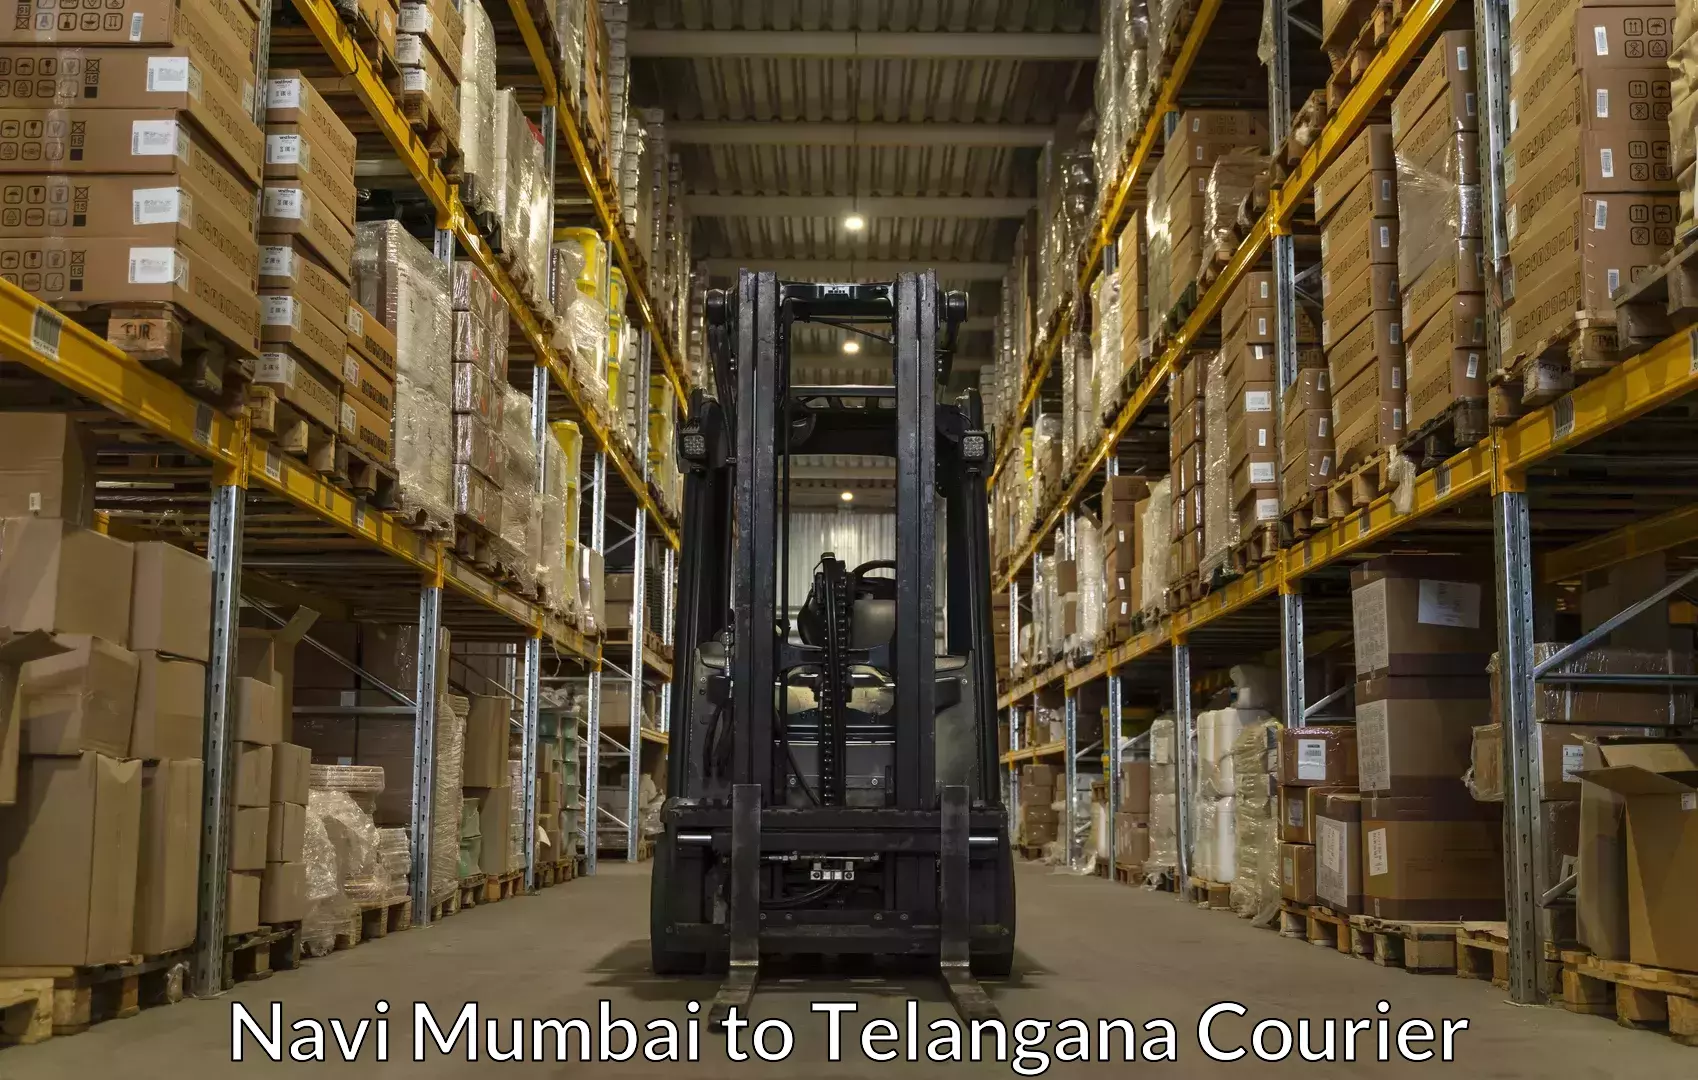 Baggage delivery management Navi Mumbai to Yerrupalem